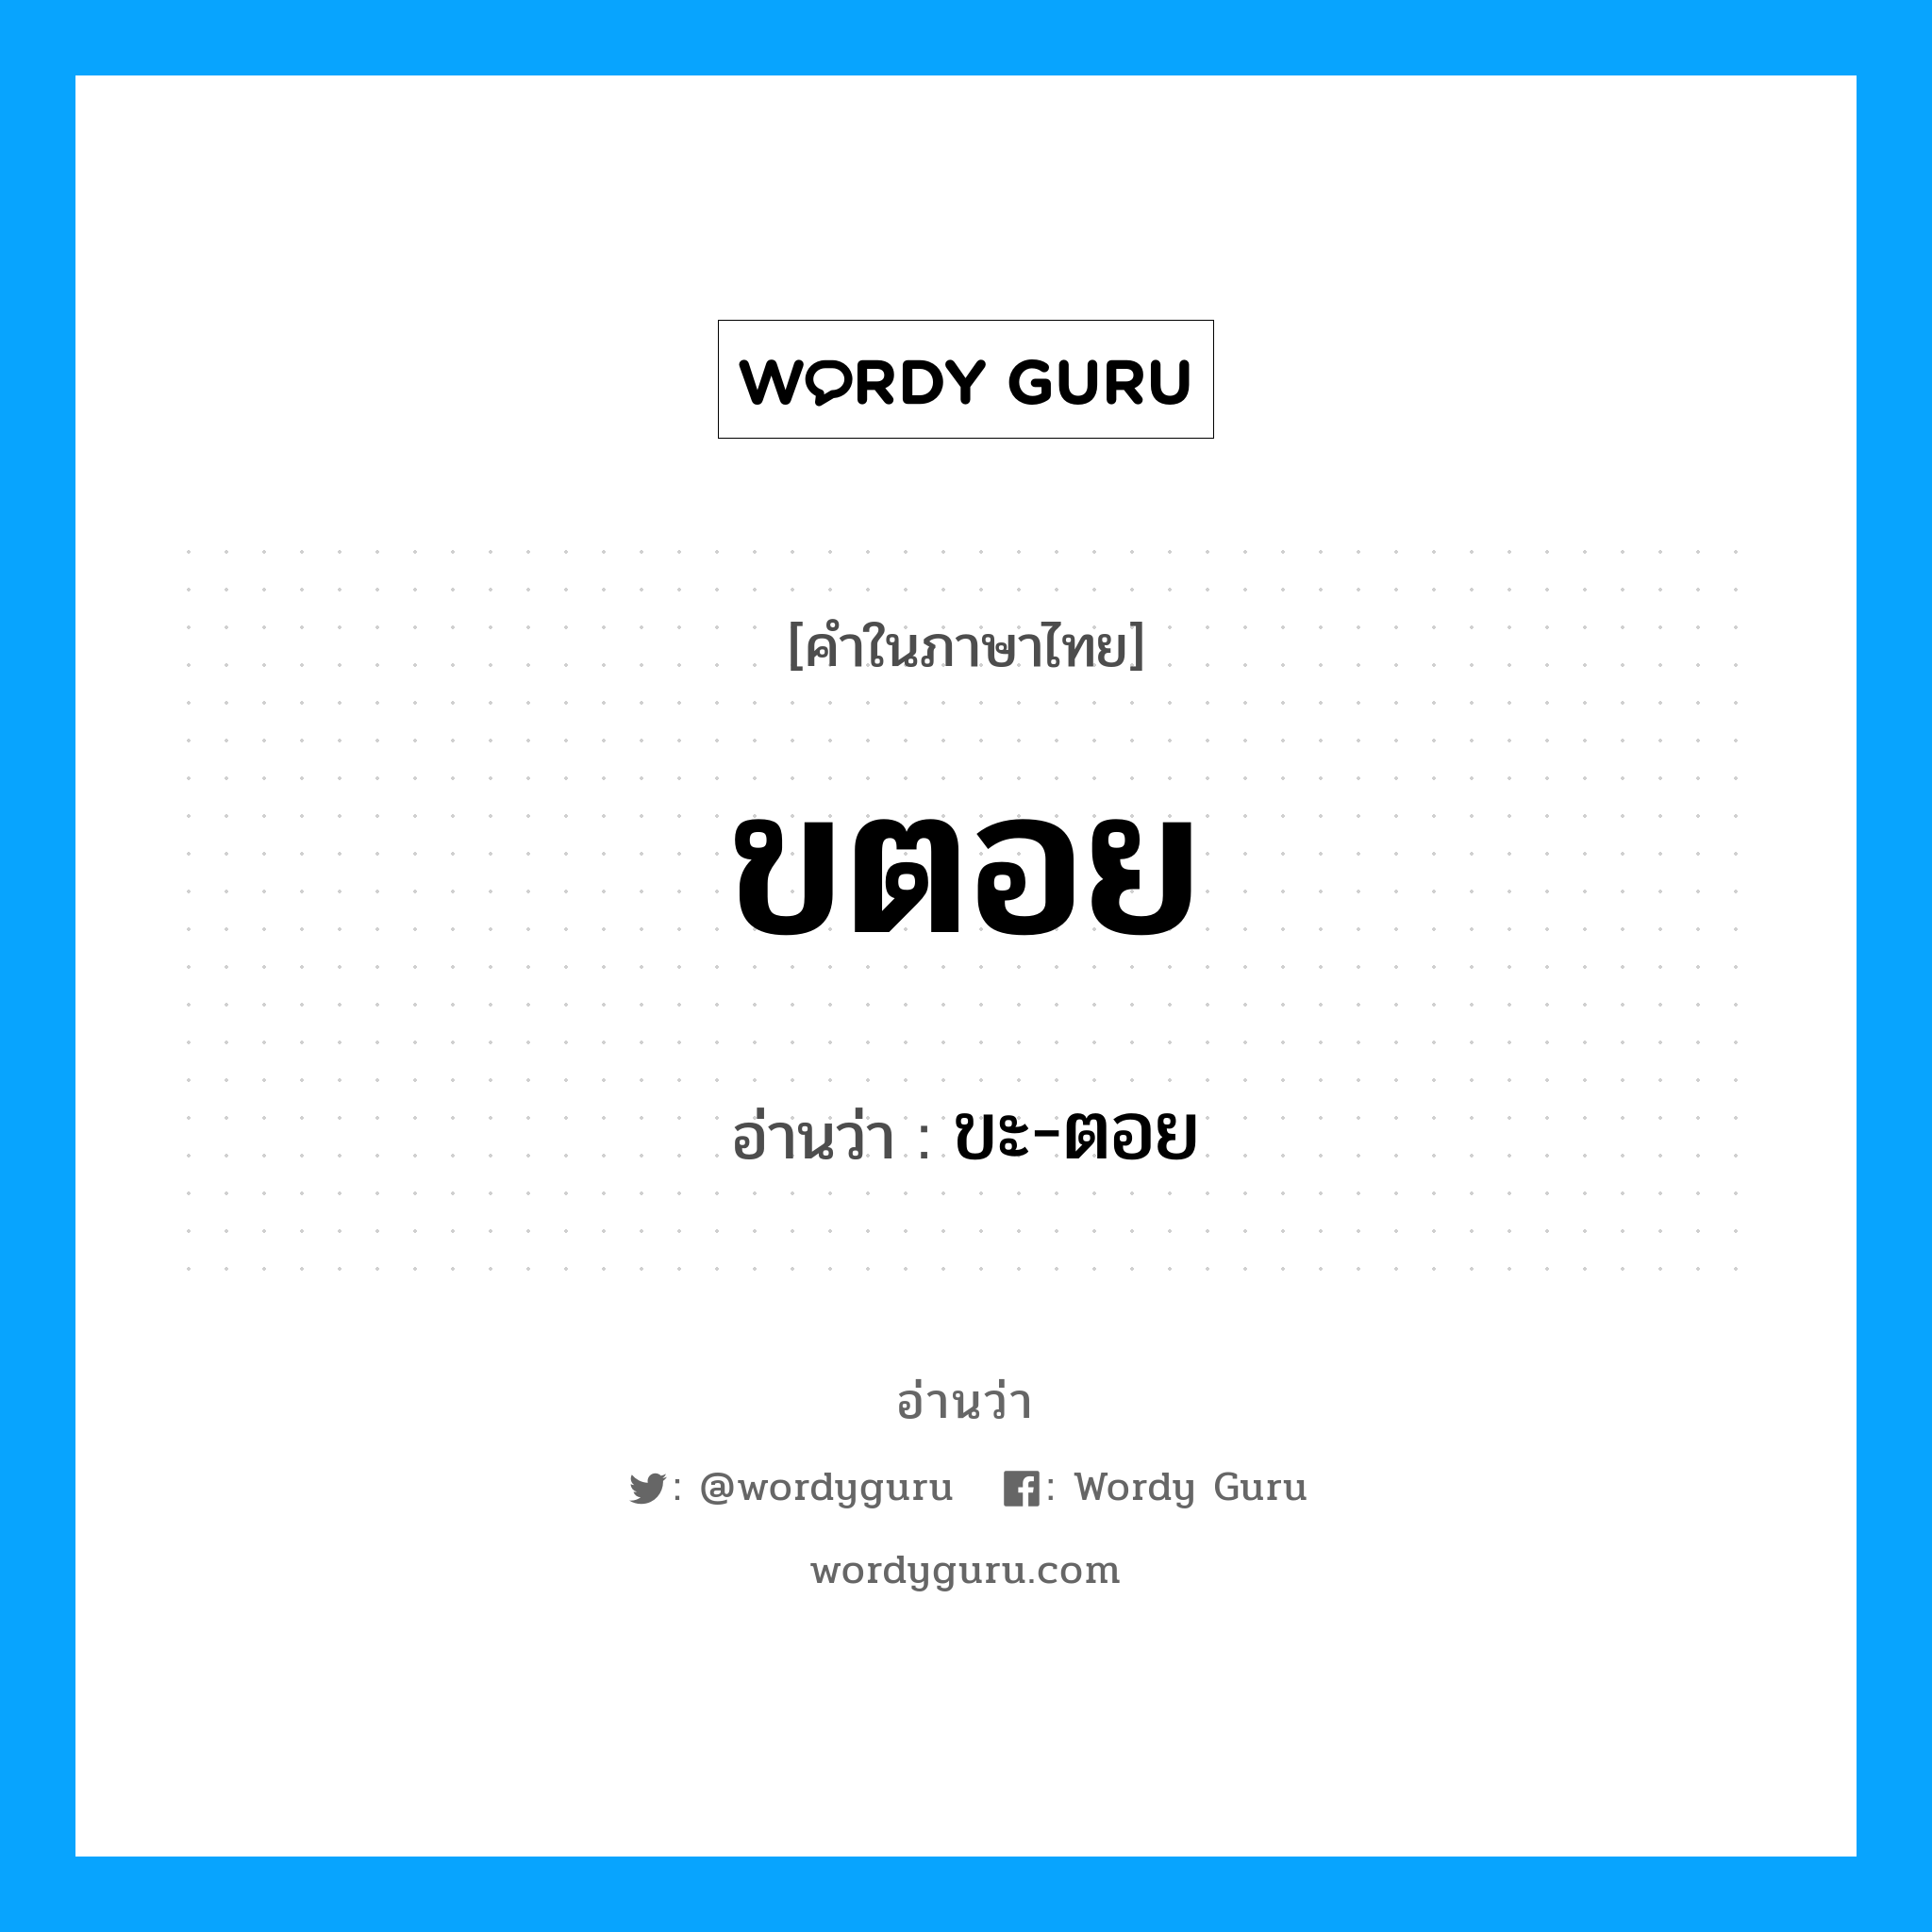 ขะ-ตอย เป็นคำอ่านของคำไหน?, คำในภาษาไทย ขะ-ตอย อ่านว่า ขตอย